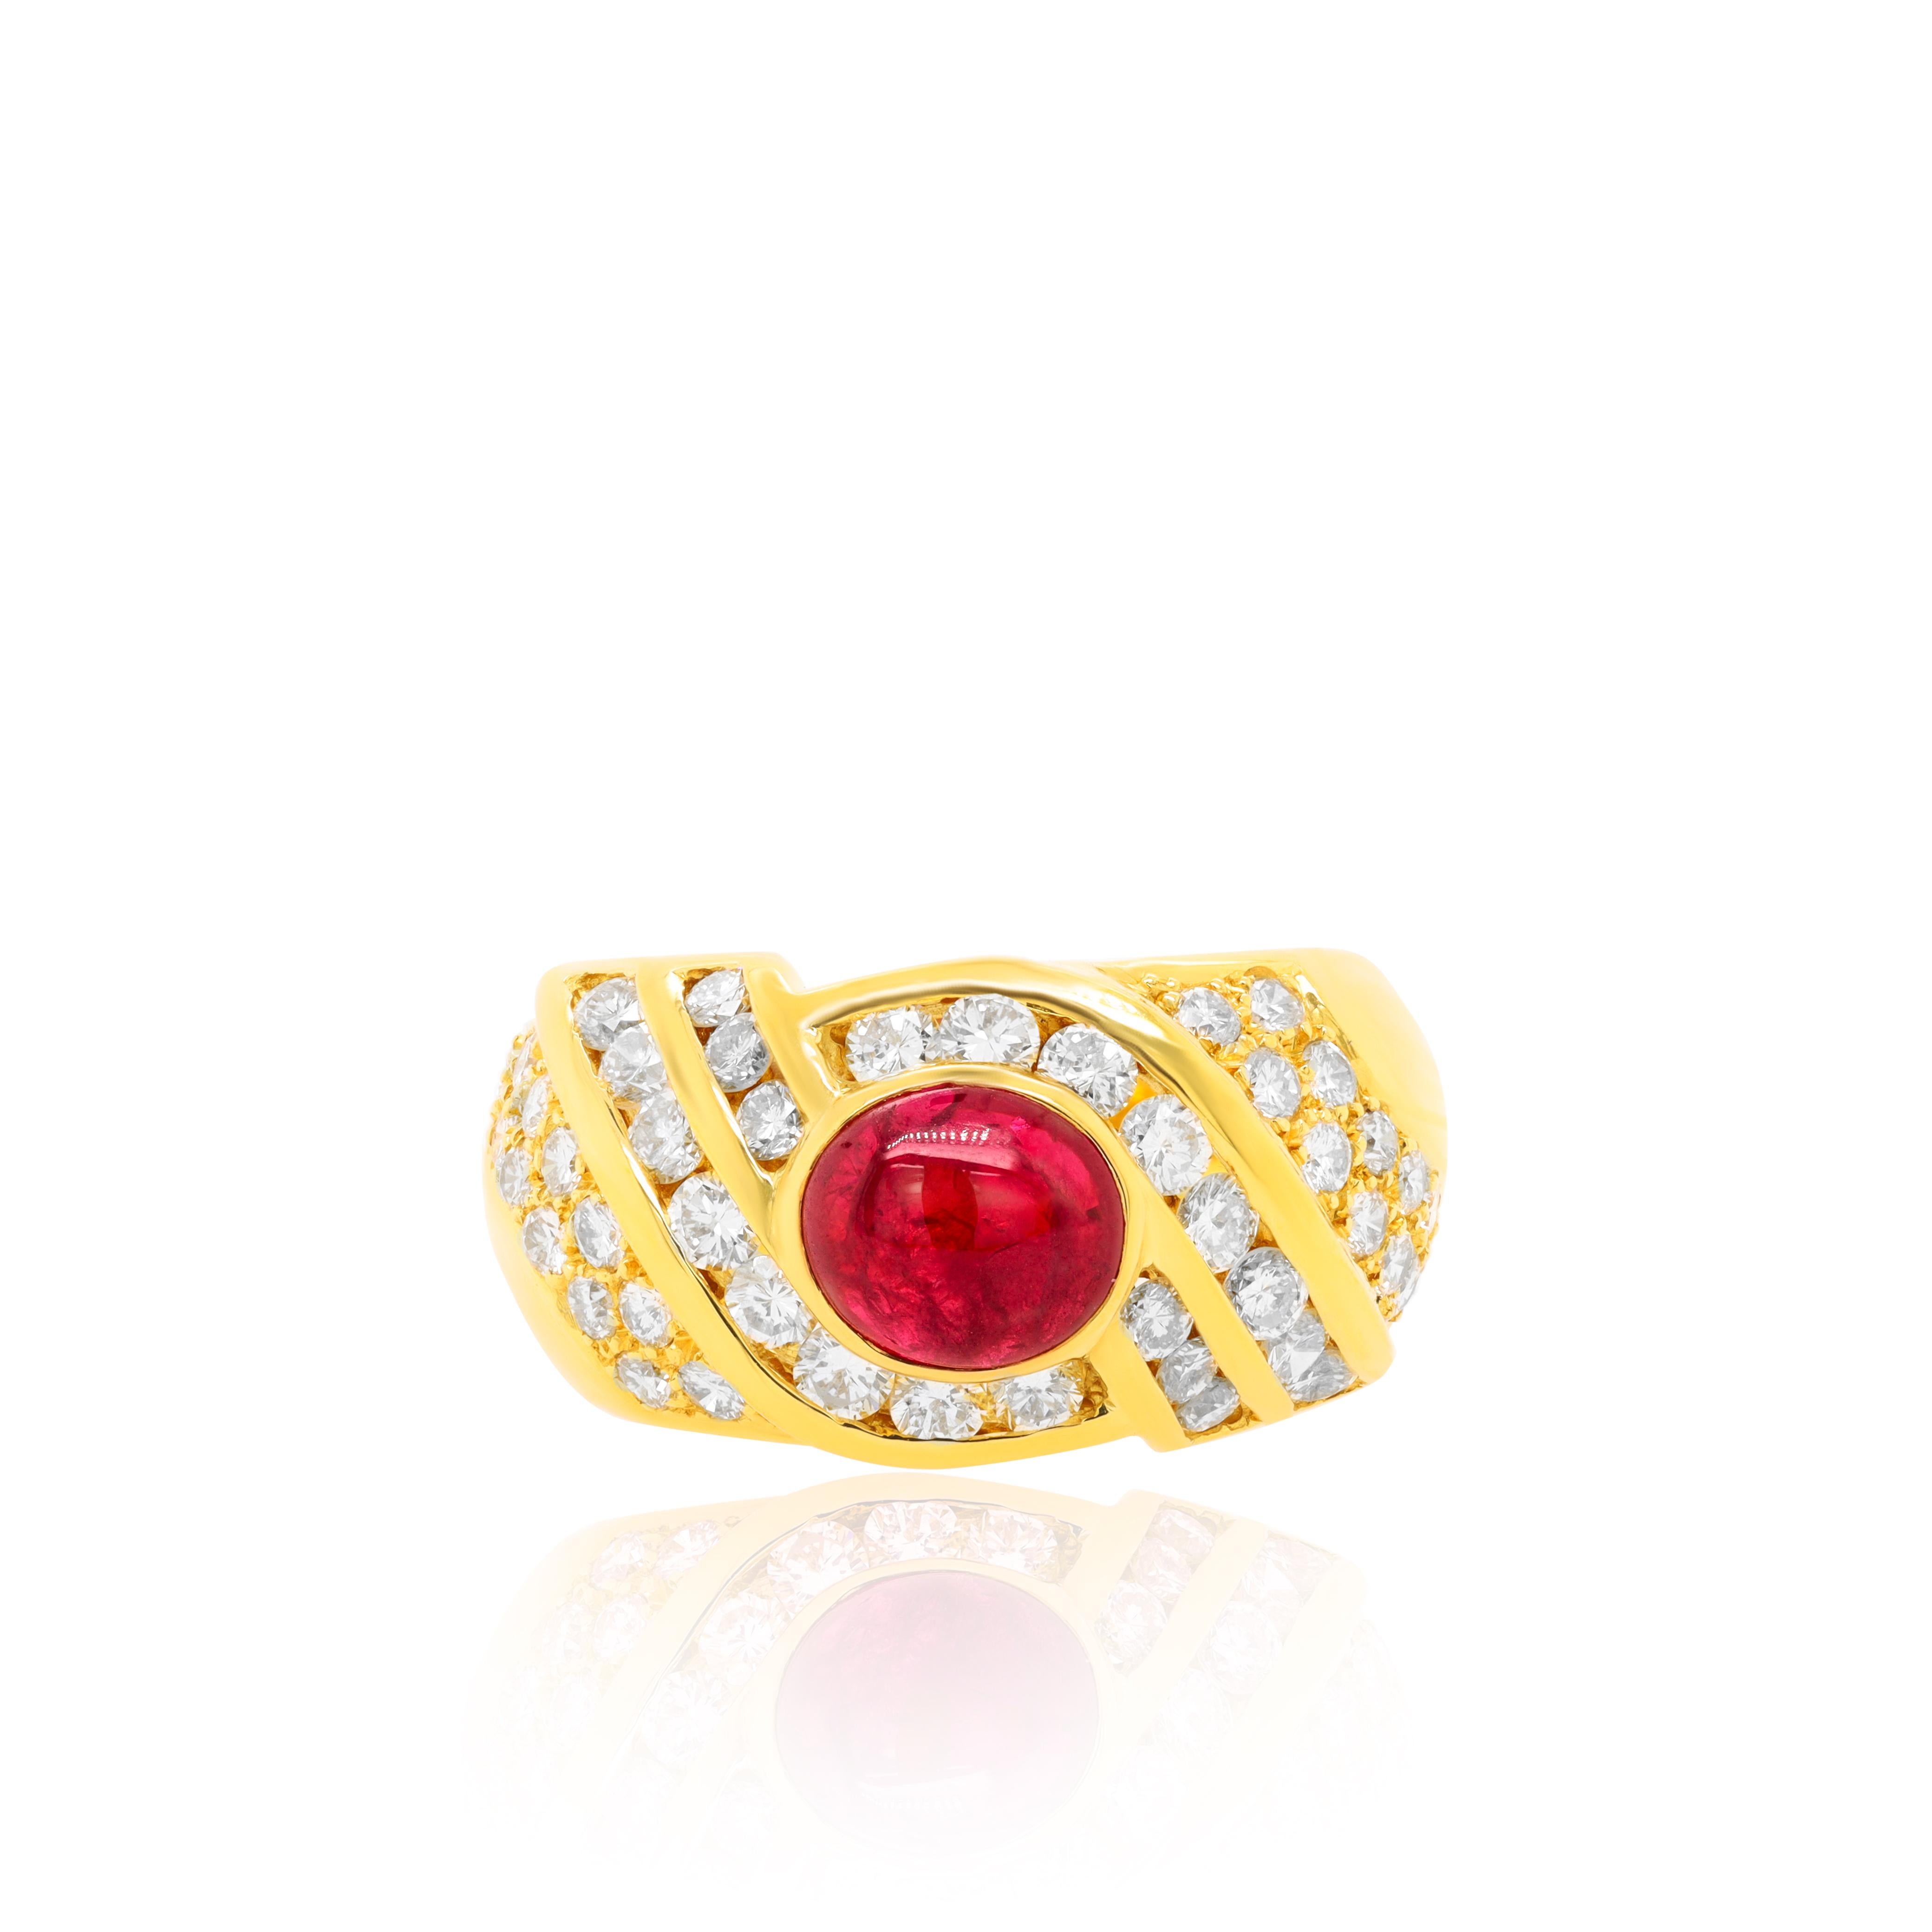 18 kt Gelbgold Rubin und Diamant Mode Ring mit einem Zentrum 1,50 ct Rubin umgeben von 1,50 cts tw von Diamanten.
Diana M. ist seit über 35 Jahren ein führender Anbieter von hochwertigem Schmuck.
Diana M ist eine zentrale Anlaufstelle für alle Ihre